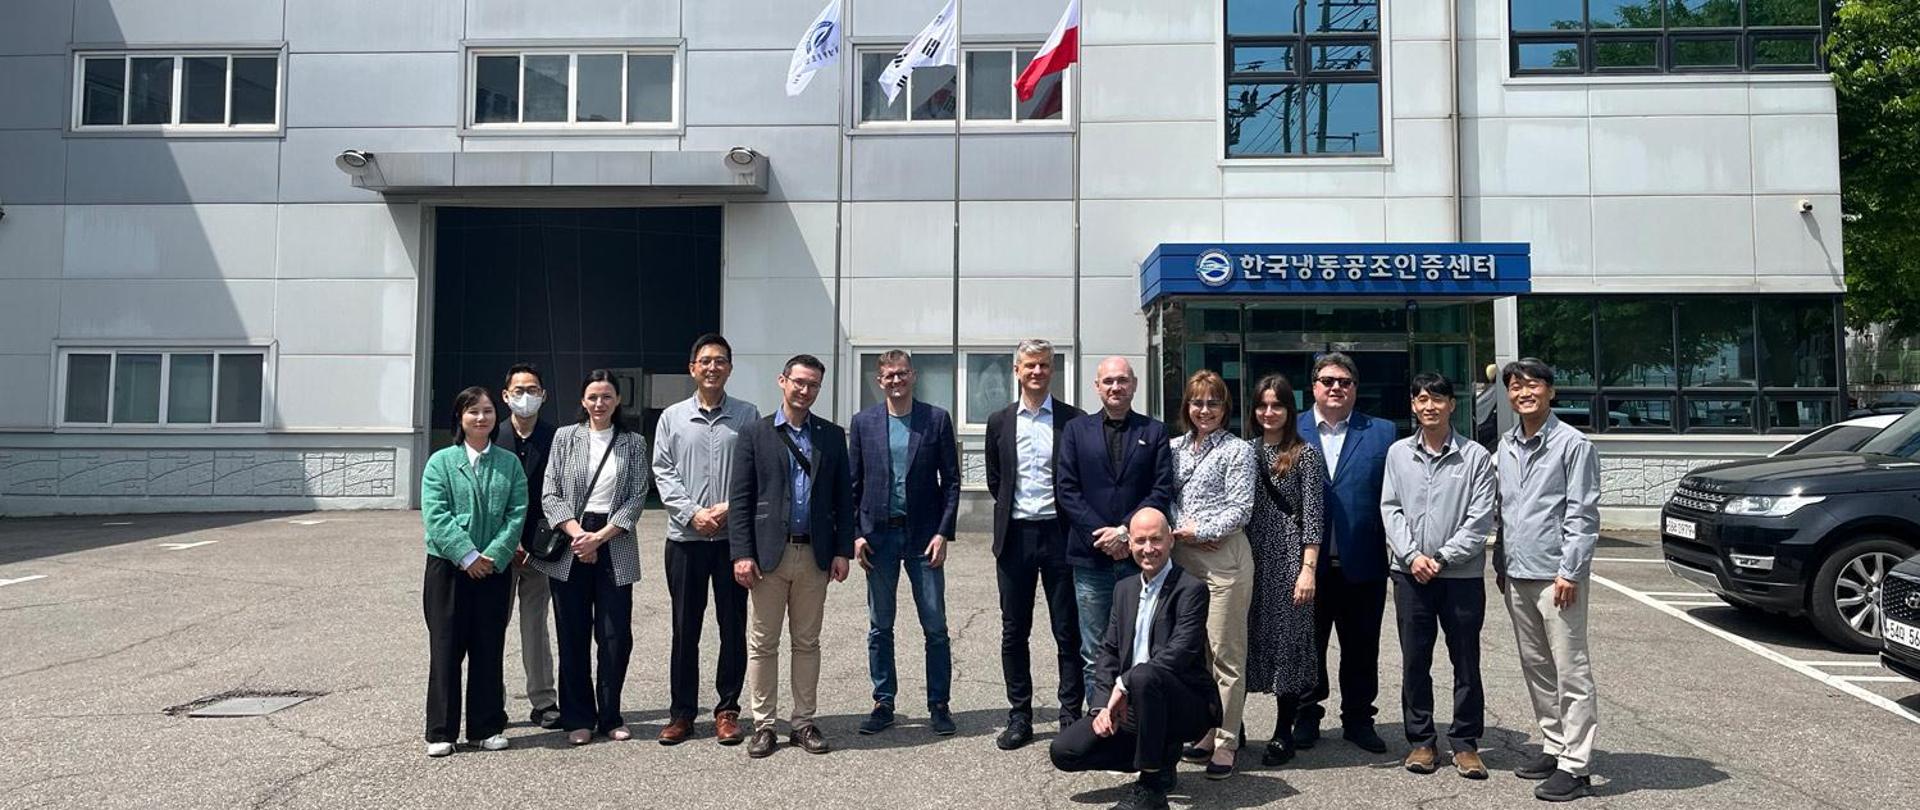 Wizyta polskiej delegacji w Seulu